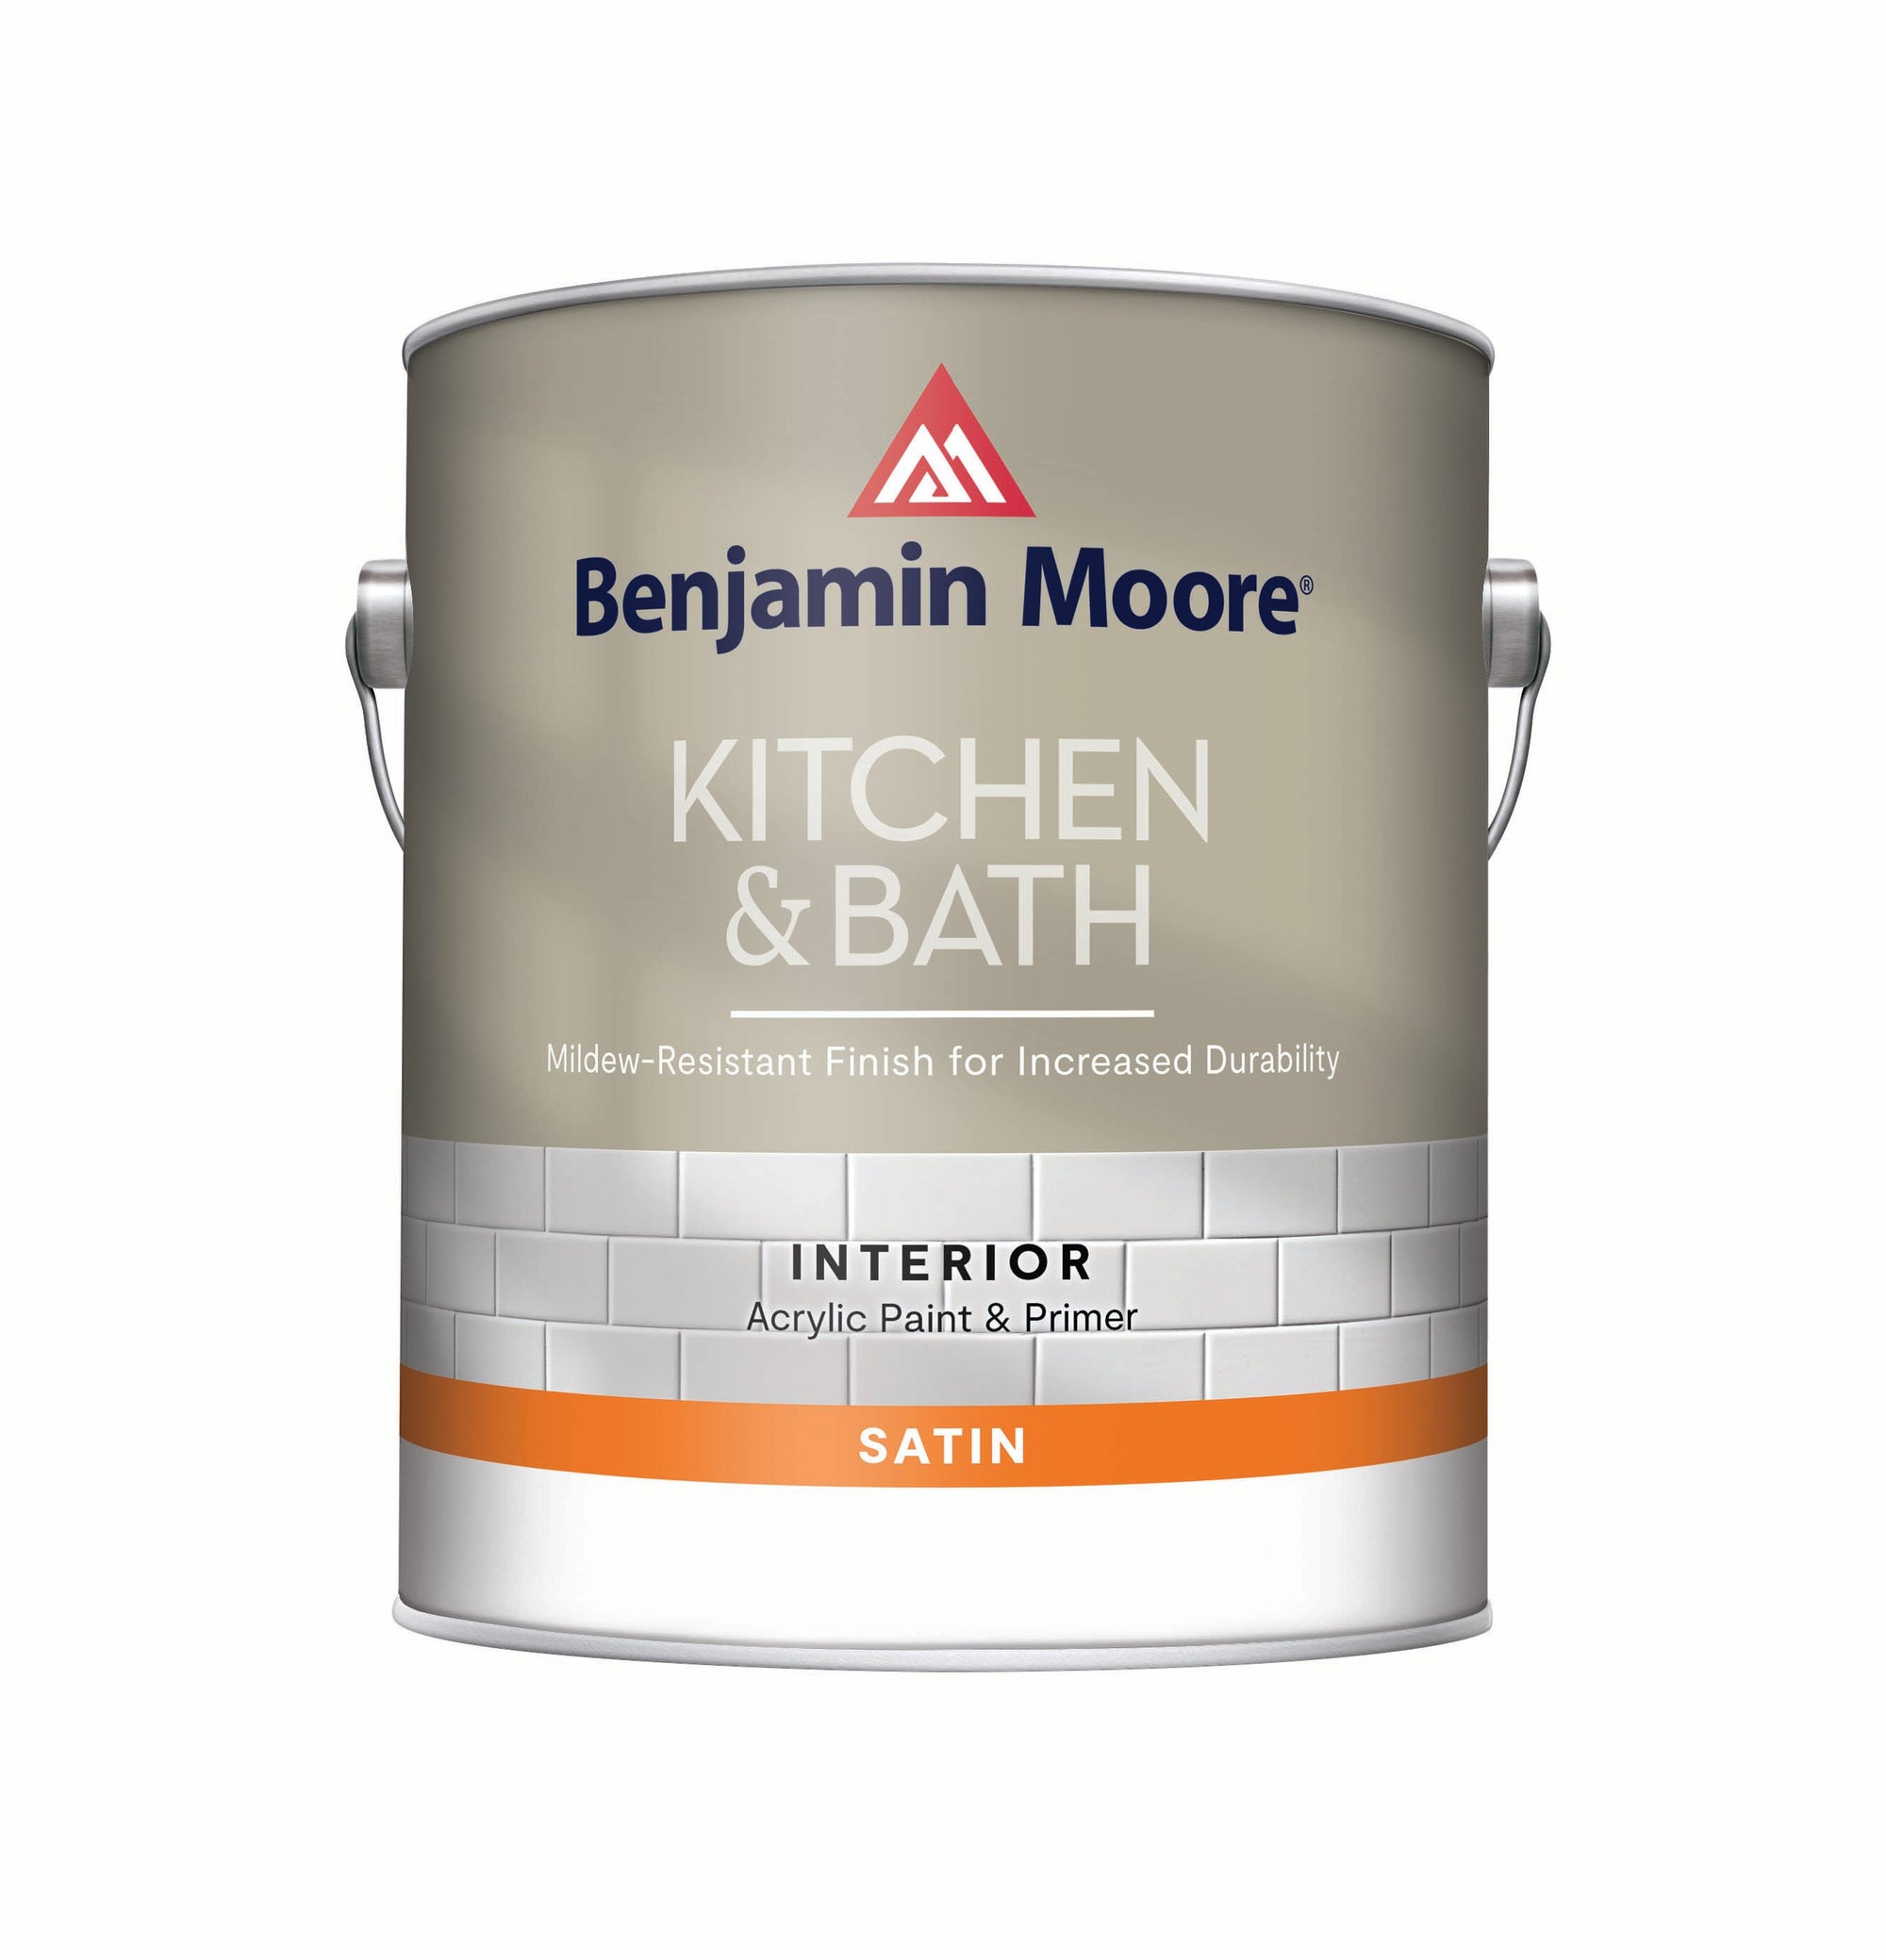 Best Selling Benjamin Moore Paint Colors  Blue bathroom paint, Bathroom  wall colors, Bathroom paint colors benjamin moore